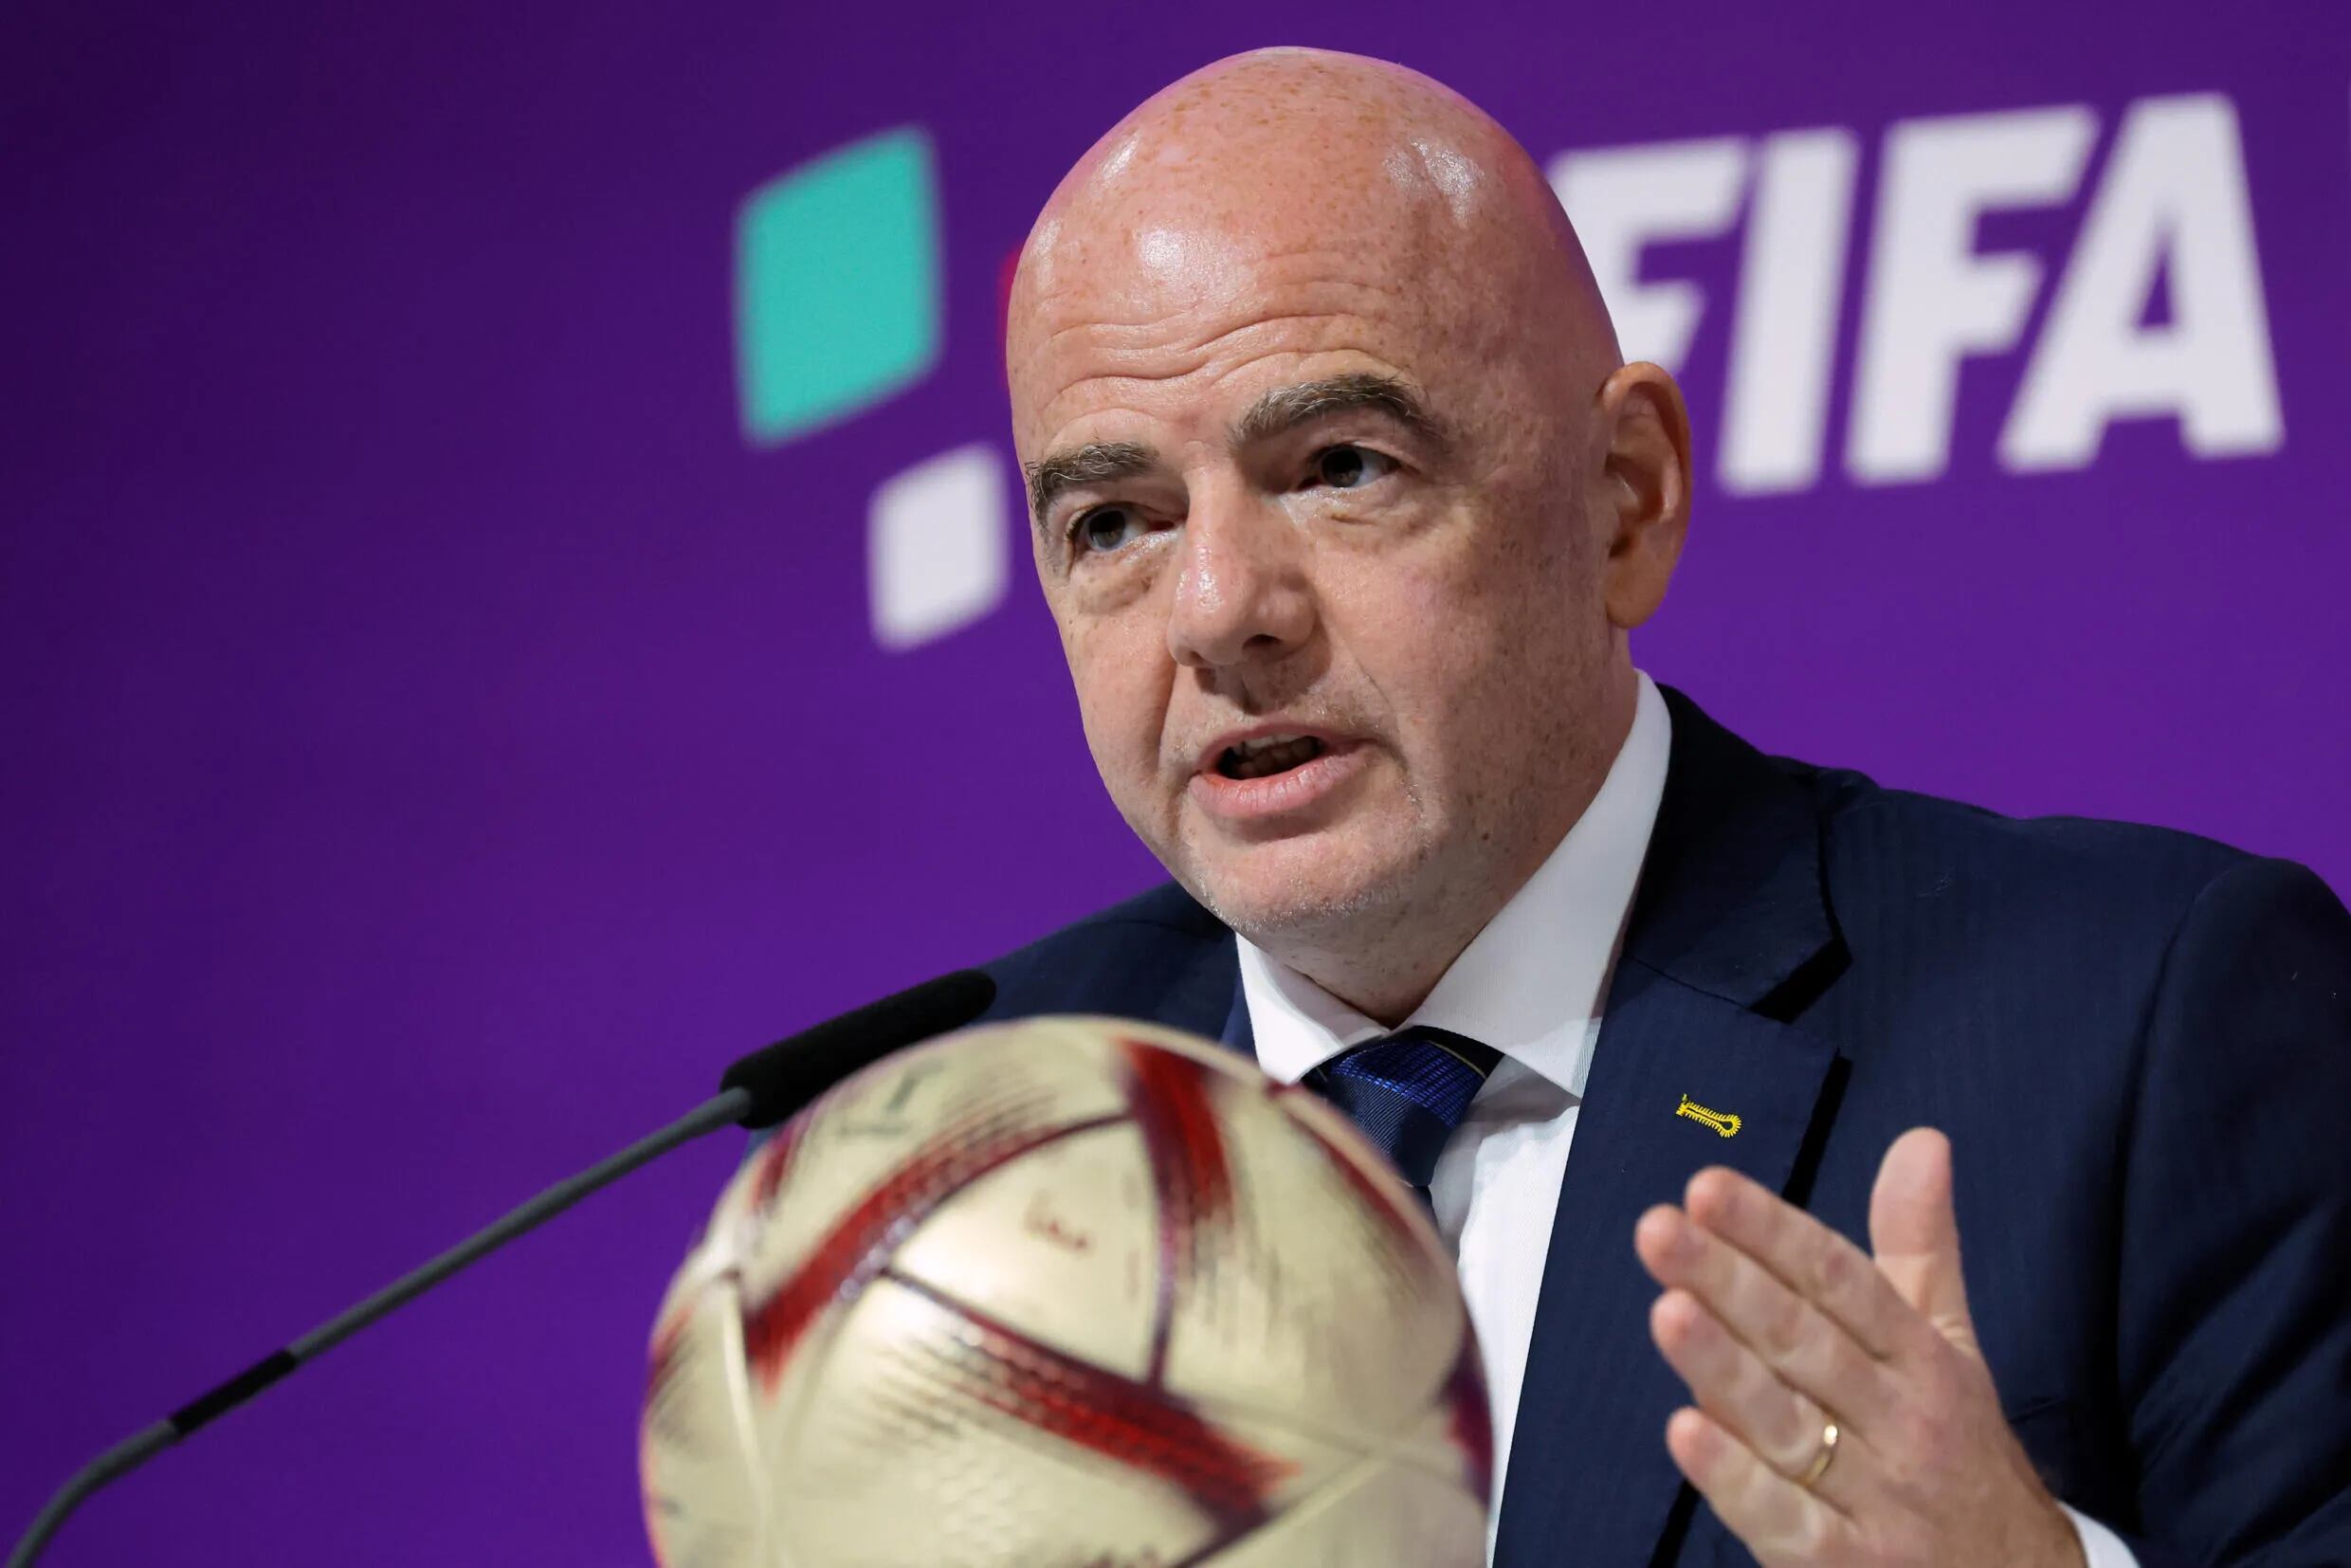 El presidente de la FIFA, Gianni Infantino, anunciando los detalles del próximo Mundial de Clubes, el 16 de diciembre de 2022 en Doha.